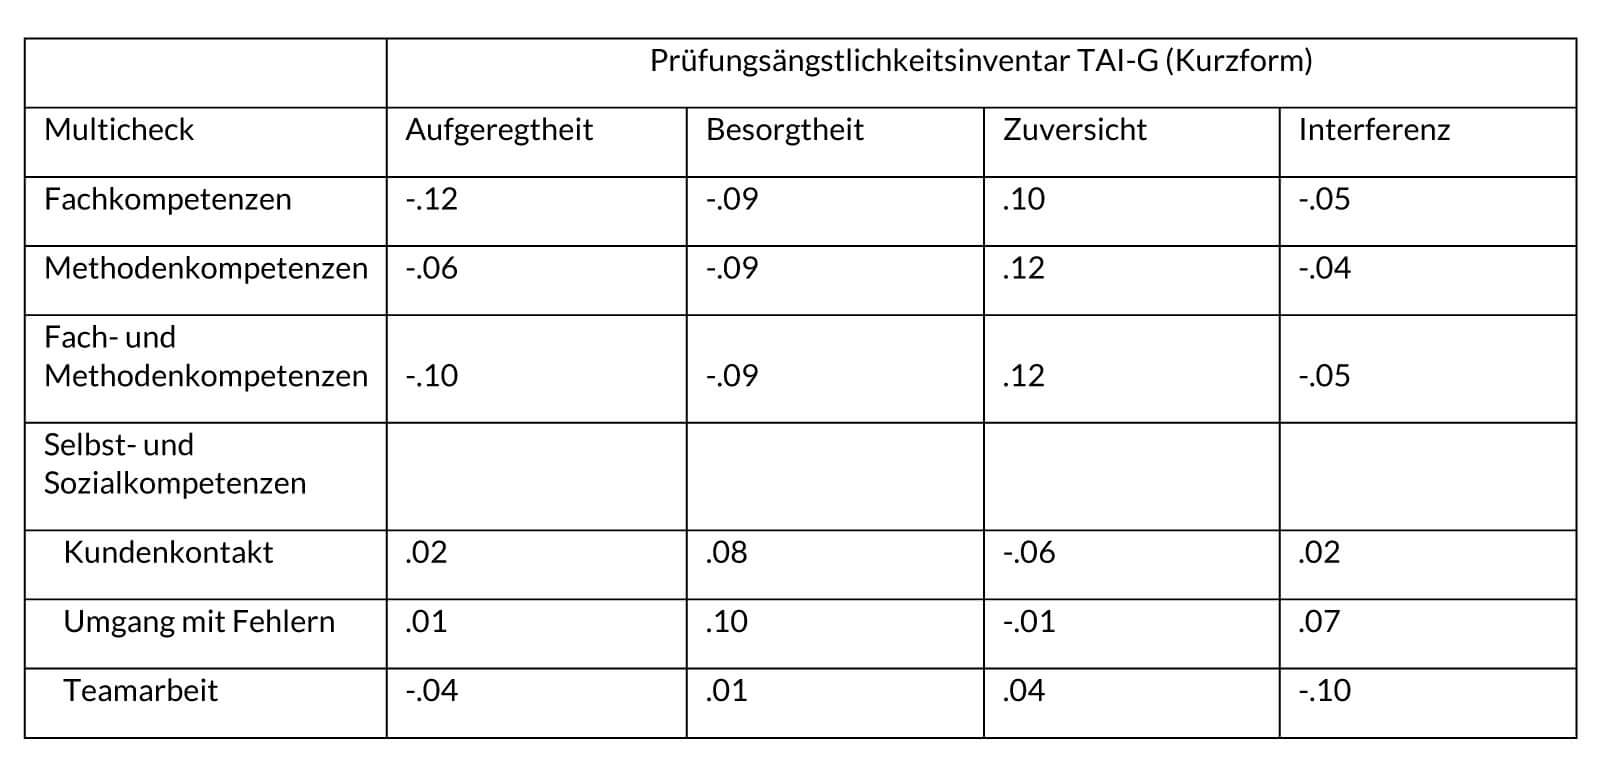 Tabelle V5. Korrelationen zwischen dem Multicheck® Wirtschaft und Administration und dem Prüfungsängstlichkeitsinventar TAI-G (Kurzform, Wacker et al. 2008)